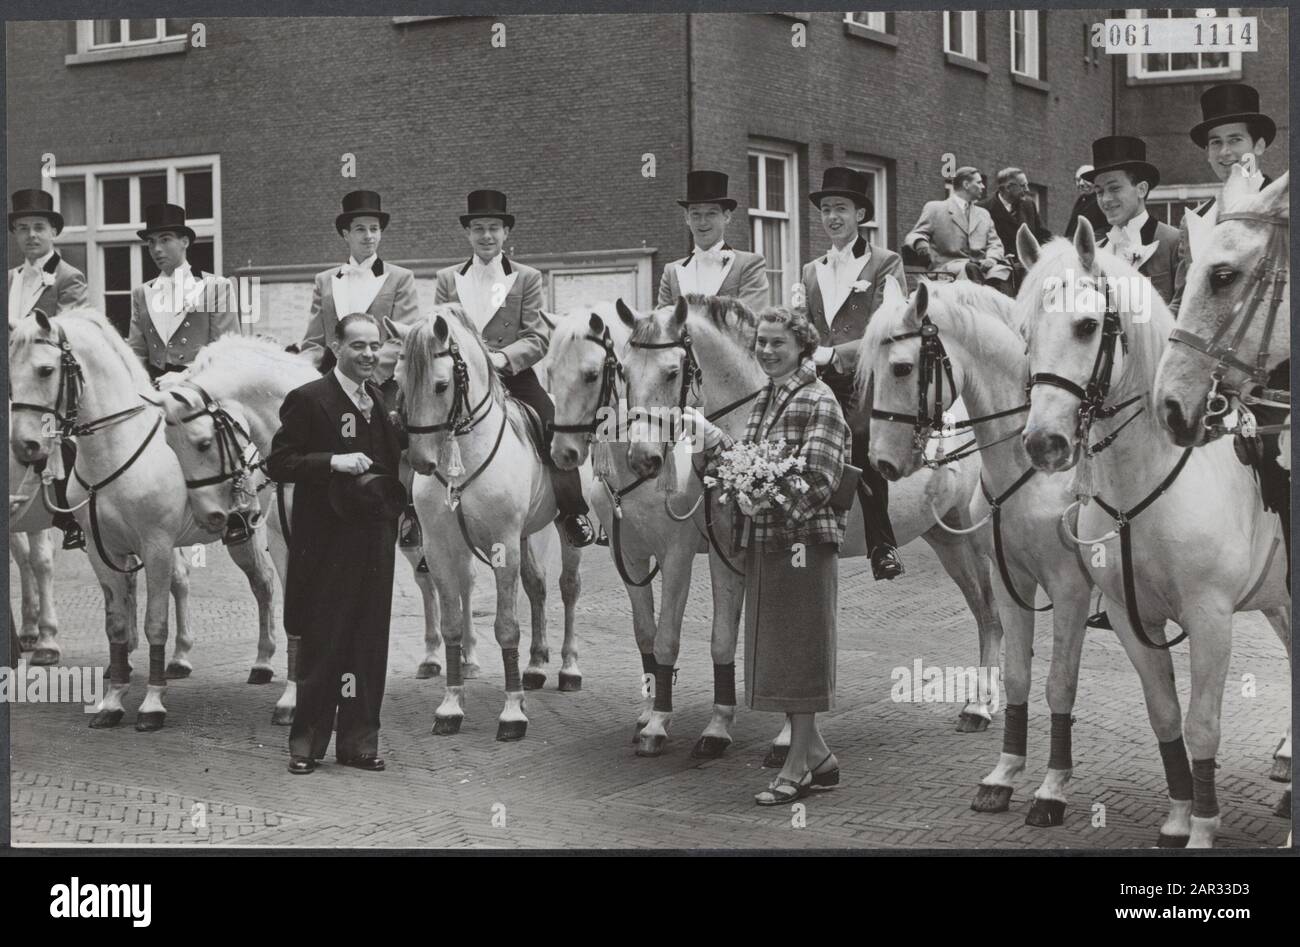 Mej Vermeyden, College-Fahrer des Zirkus Kavaljos, heiratete Dr. Hendriks aus Utrechter. Um den Mitfahrern zu gefallen, waren sie am Hochzeitstag anwesend: 26. März 1954 Schlüsselwörter: Brautpaare, Zirkusse, Ehen, Pferde Personenname: Hendriks Stockfoto